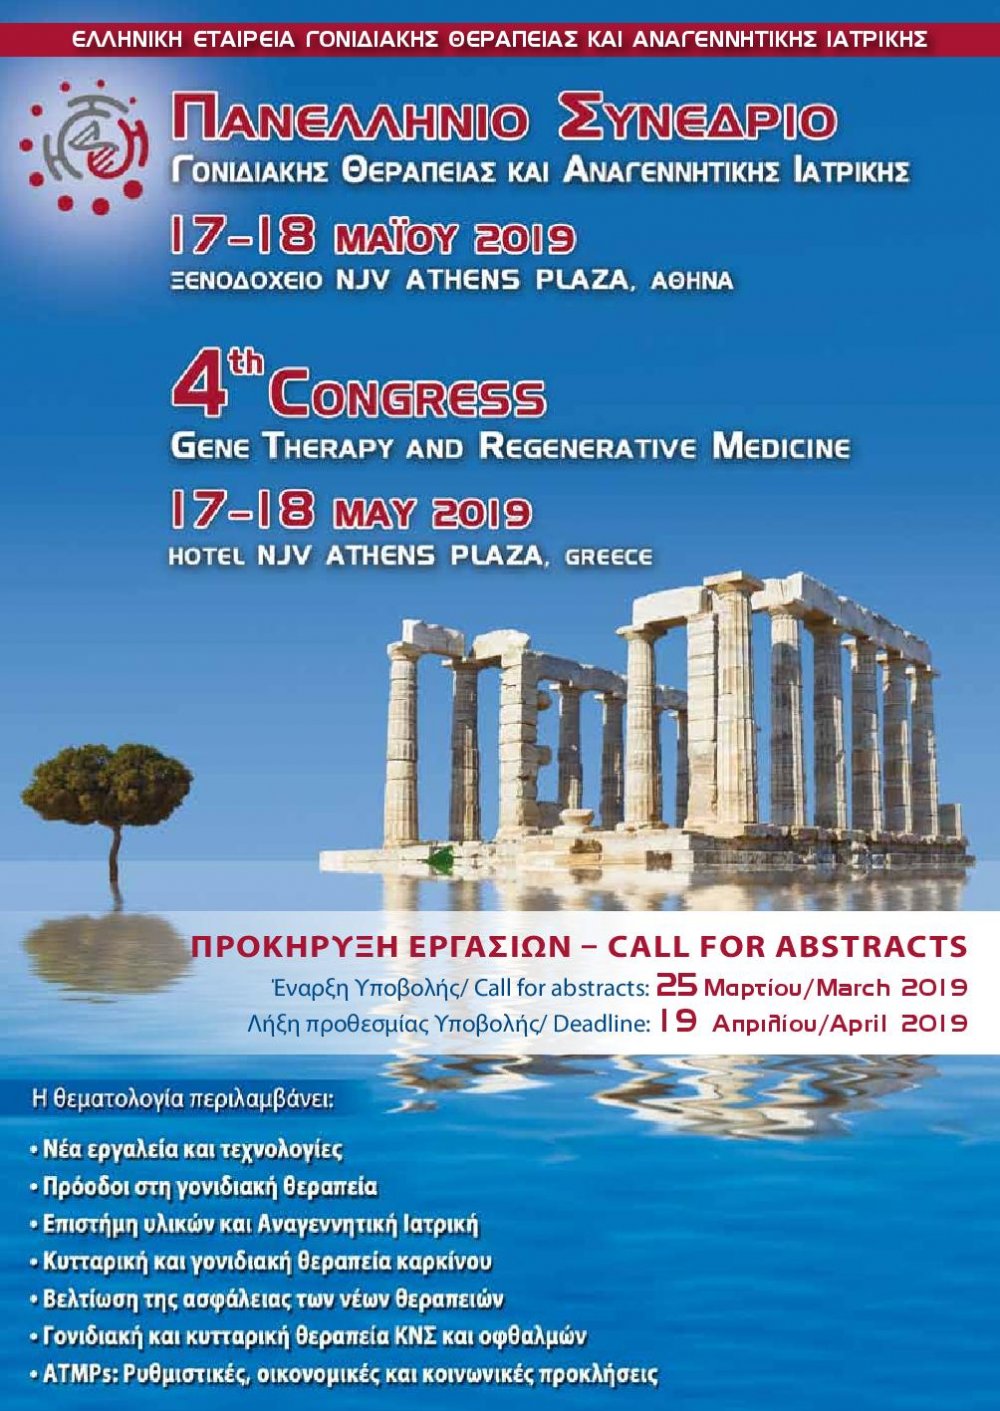 Πανελλήνιο Συνέδριο Ελληνικής Εταιρείας Γονιδιακής Θεραπείας και Αναγεννητικής Ιατρικής